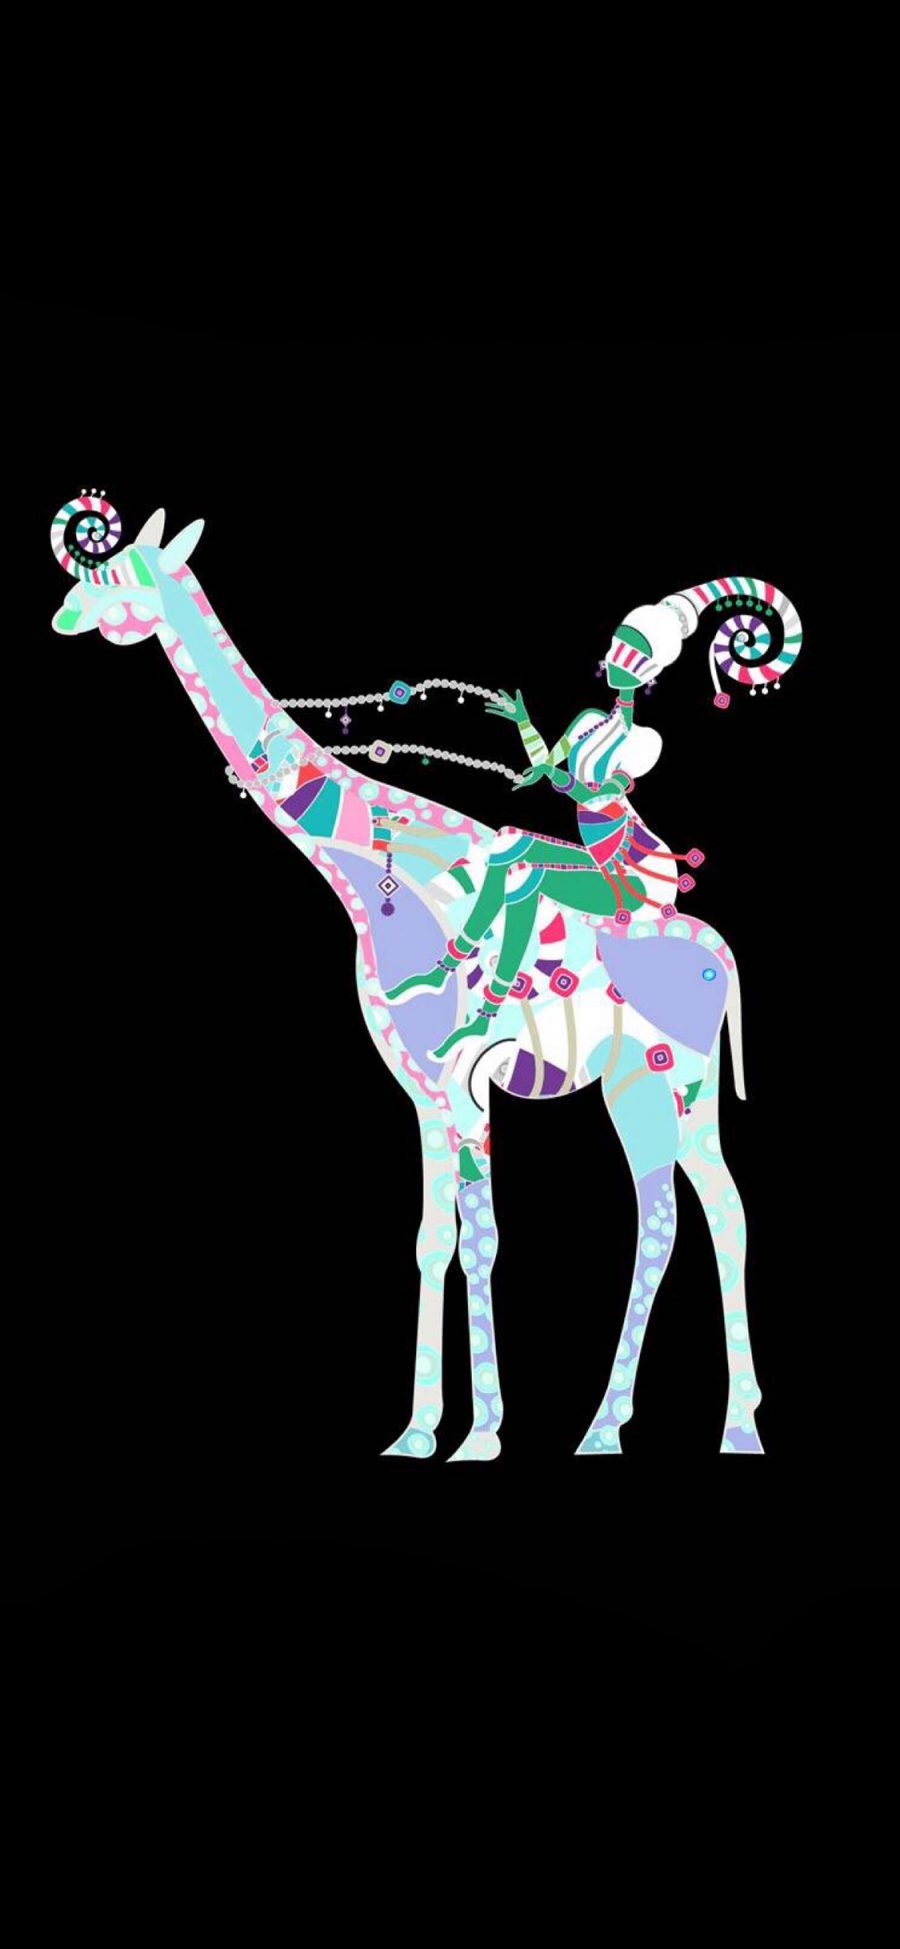 [2436×1125]卡通 插图 色彩 马戏团 长颈鹿 苹果手机动漫壁纸图片